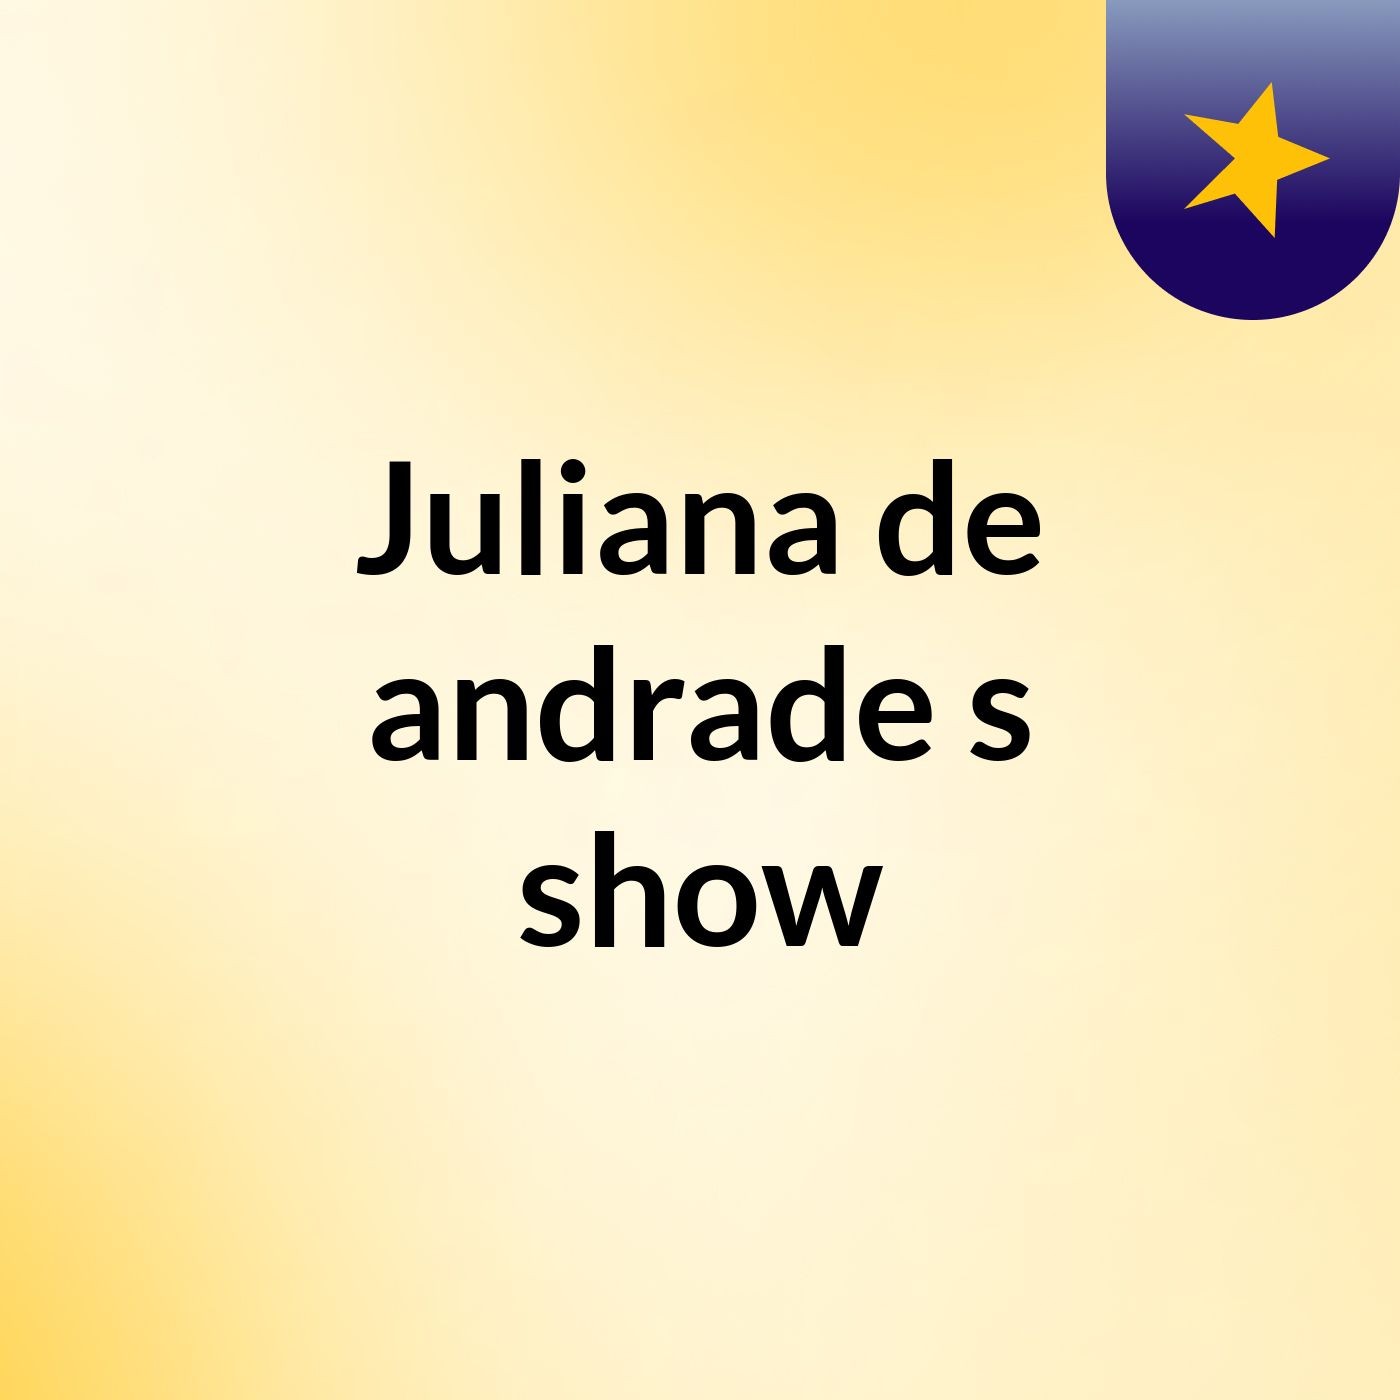 Juliana de andrade's show